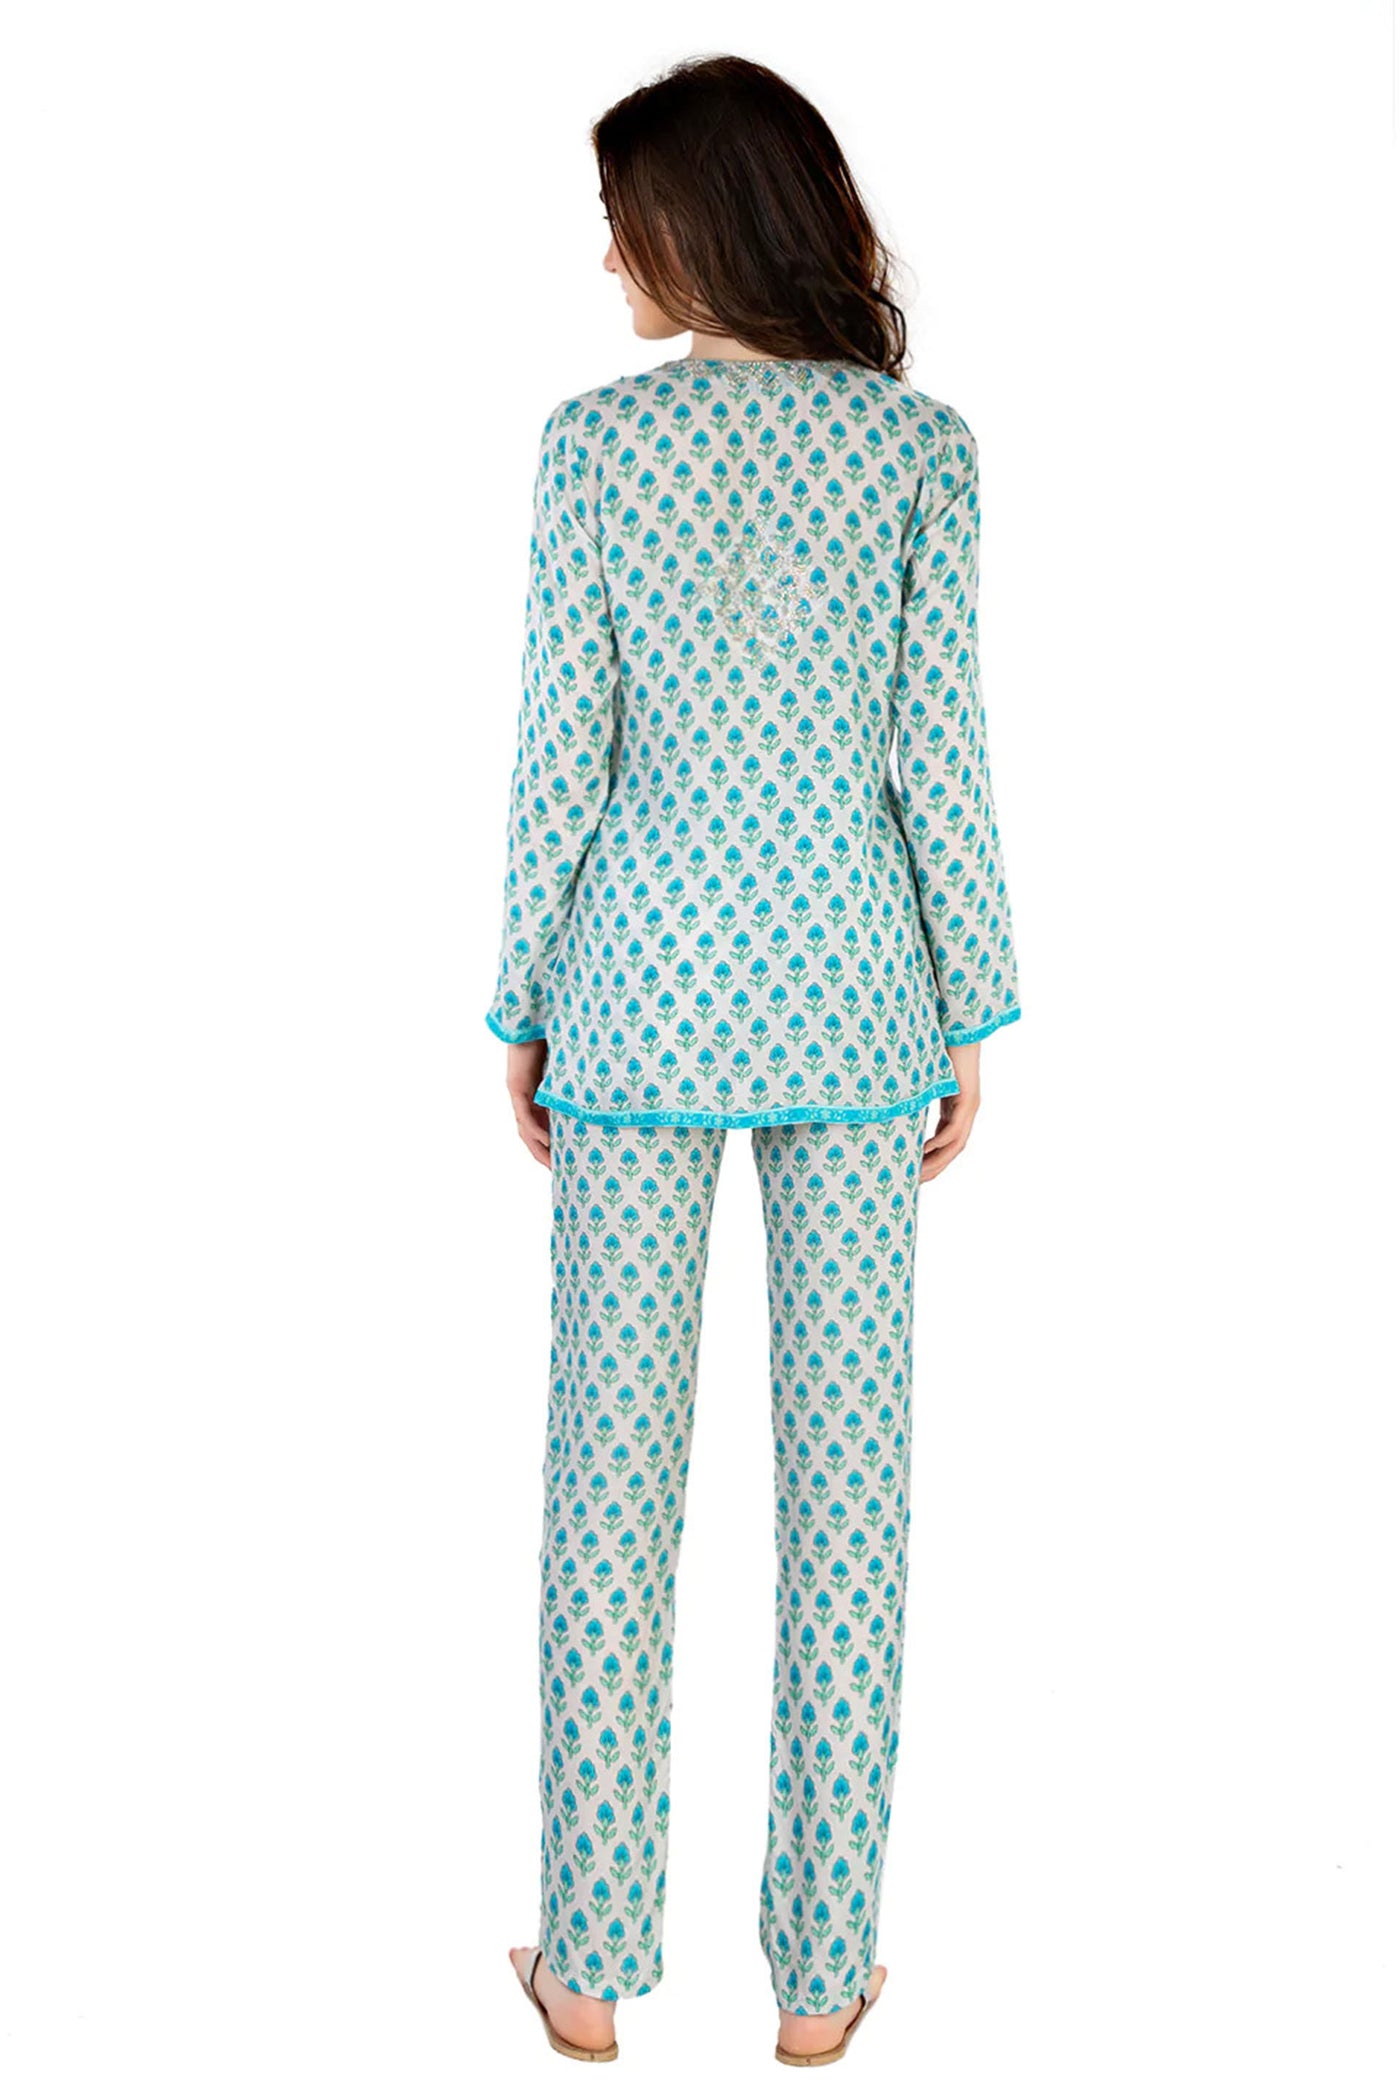 Monisha Jaising Firozi Set blue online shopping melange singapore indian designer wear